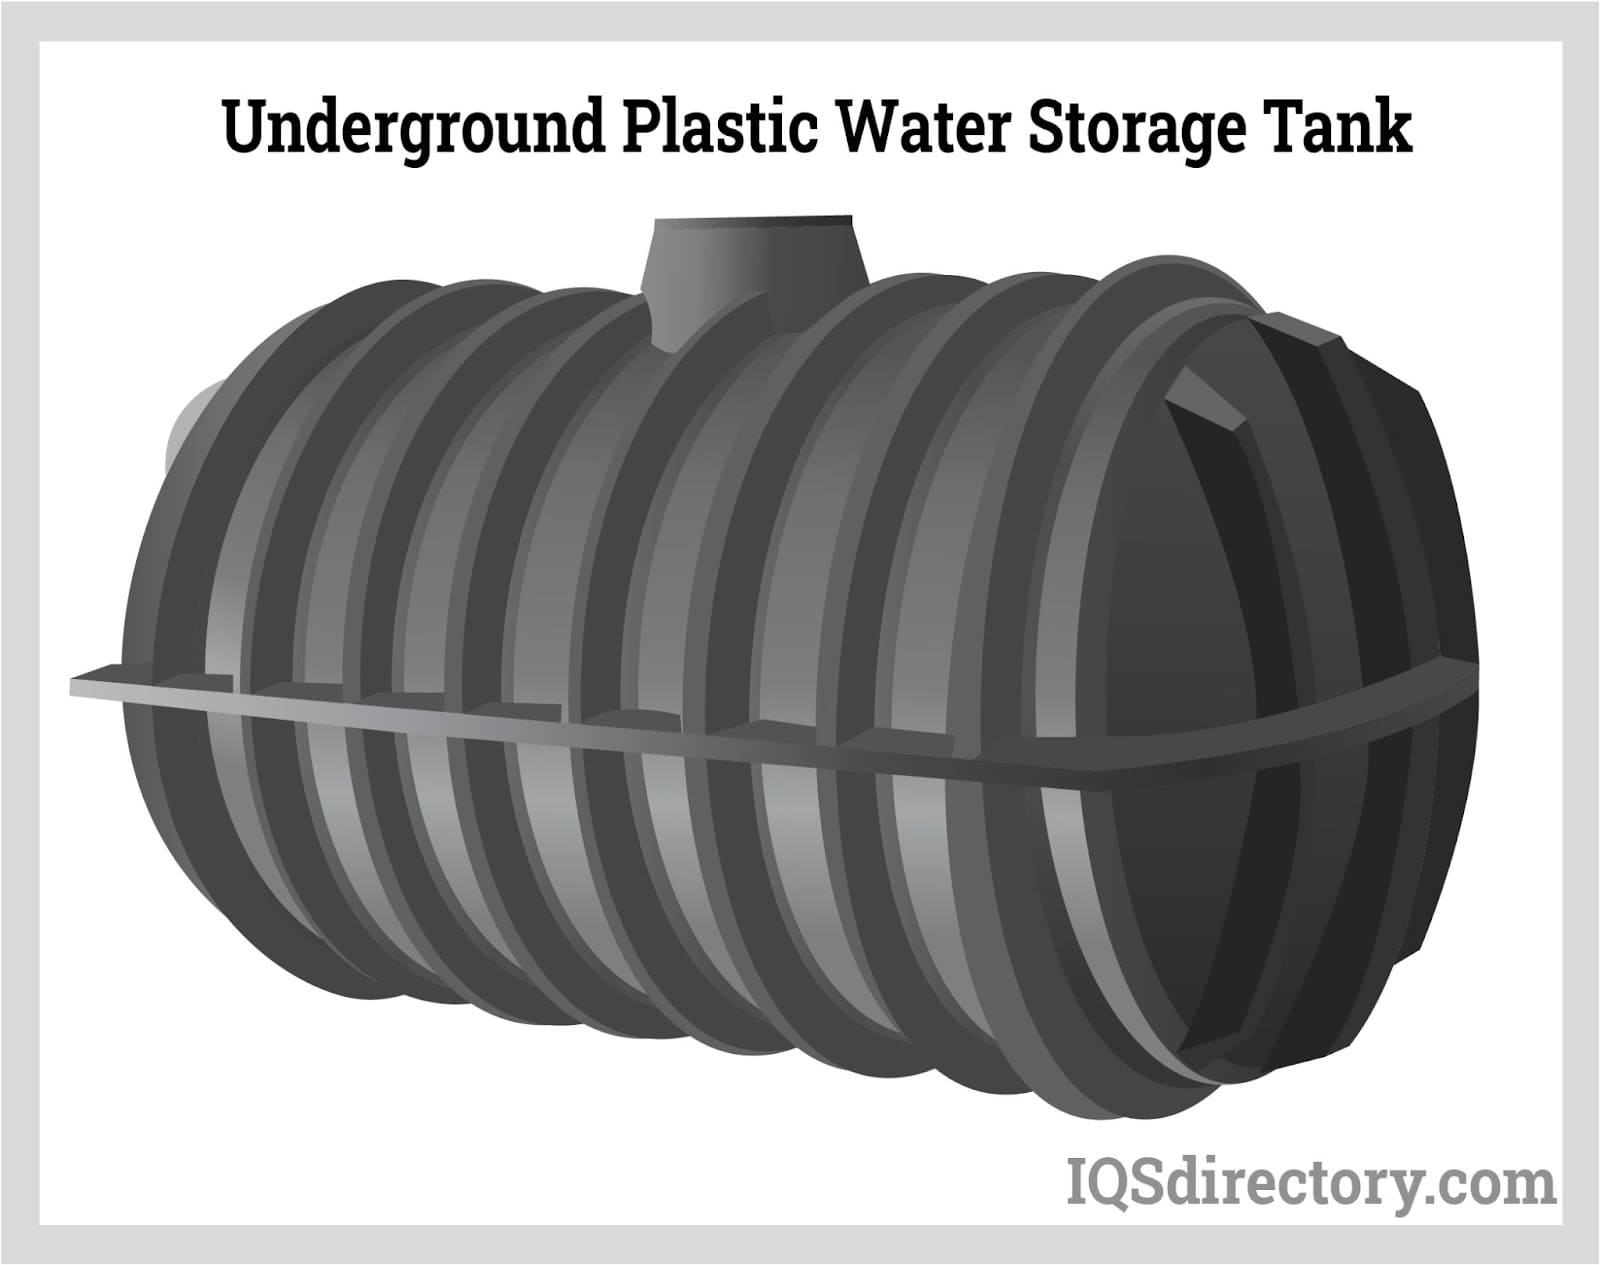 Underground Plastic Water Storage Tank